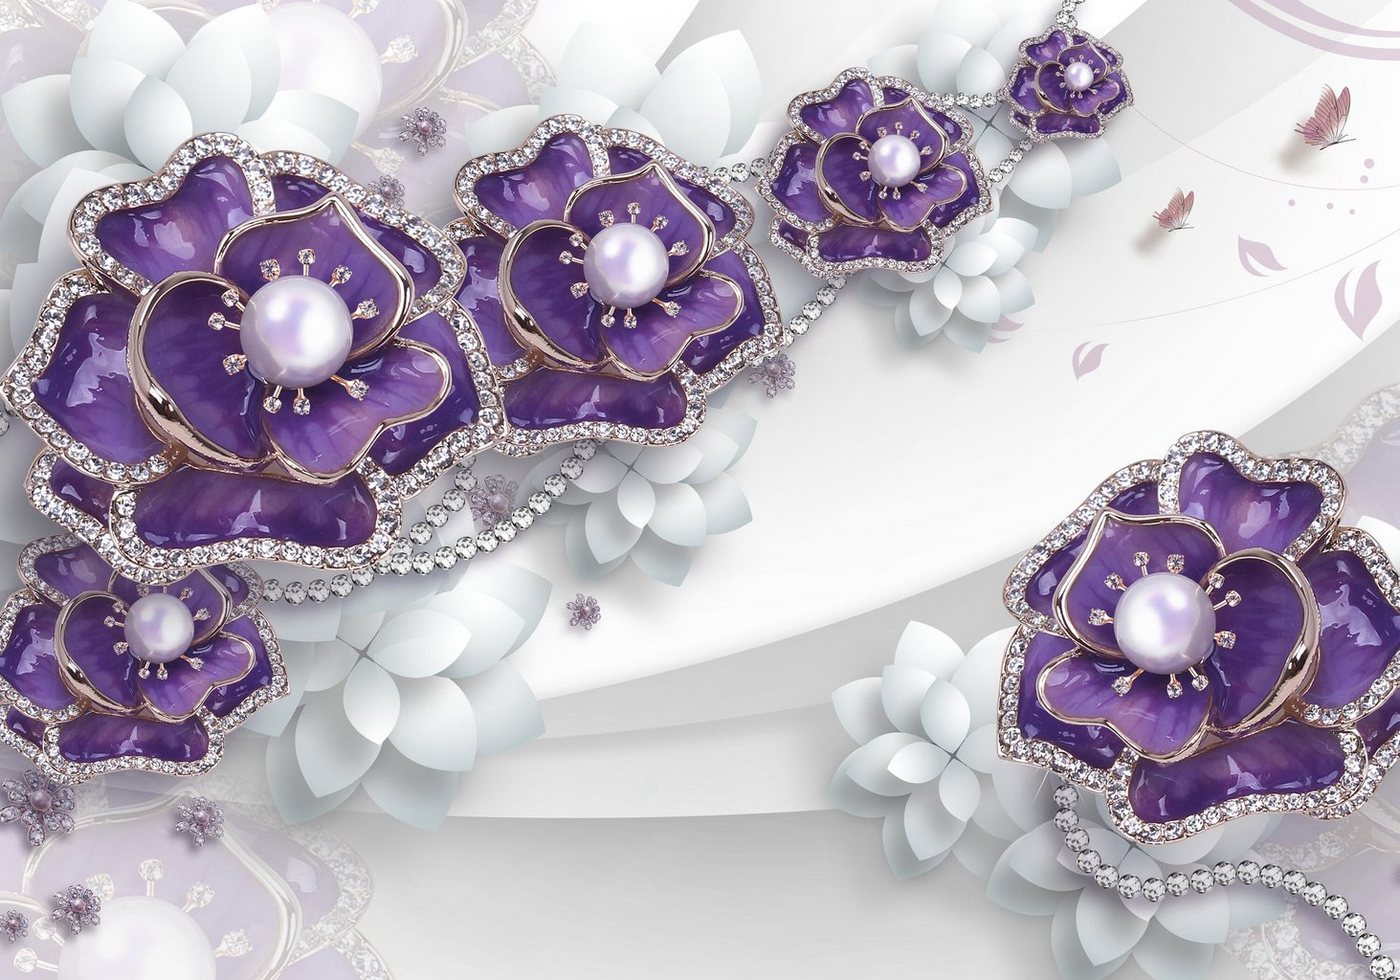 wandmotiv24 Fototapete Blumen Perlen 3D violett weiß, strukturiert, Wandtapete, Motivtapete, matt, Vinyltapete, selbstklebend von wandmotiv24